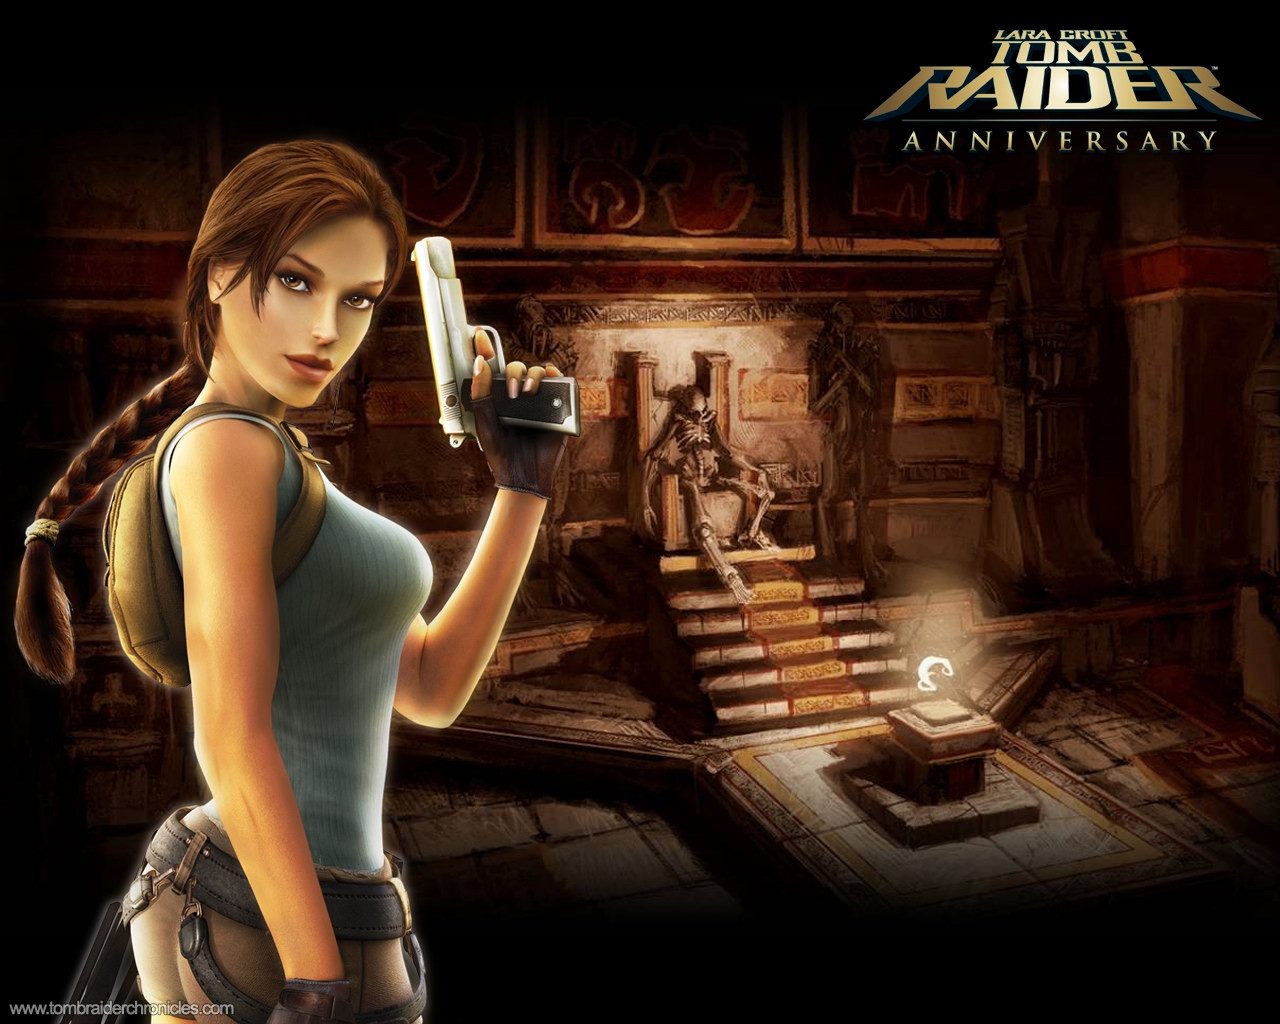 Lara Croft Tomb Raider 10th Anniversary Wallpaper #1 - 1280x1024